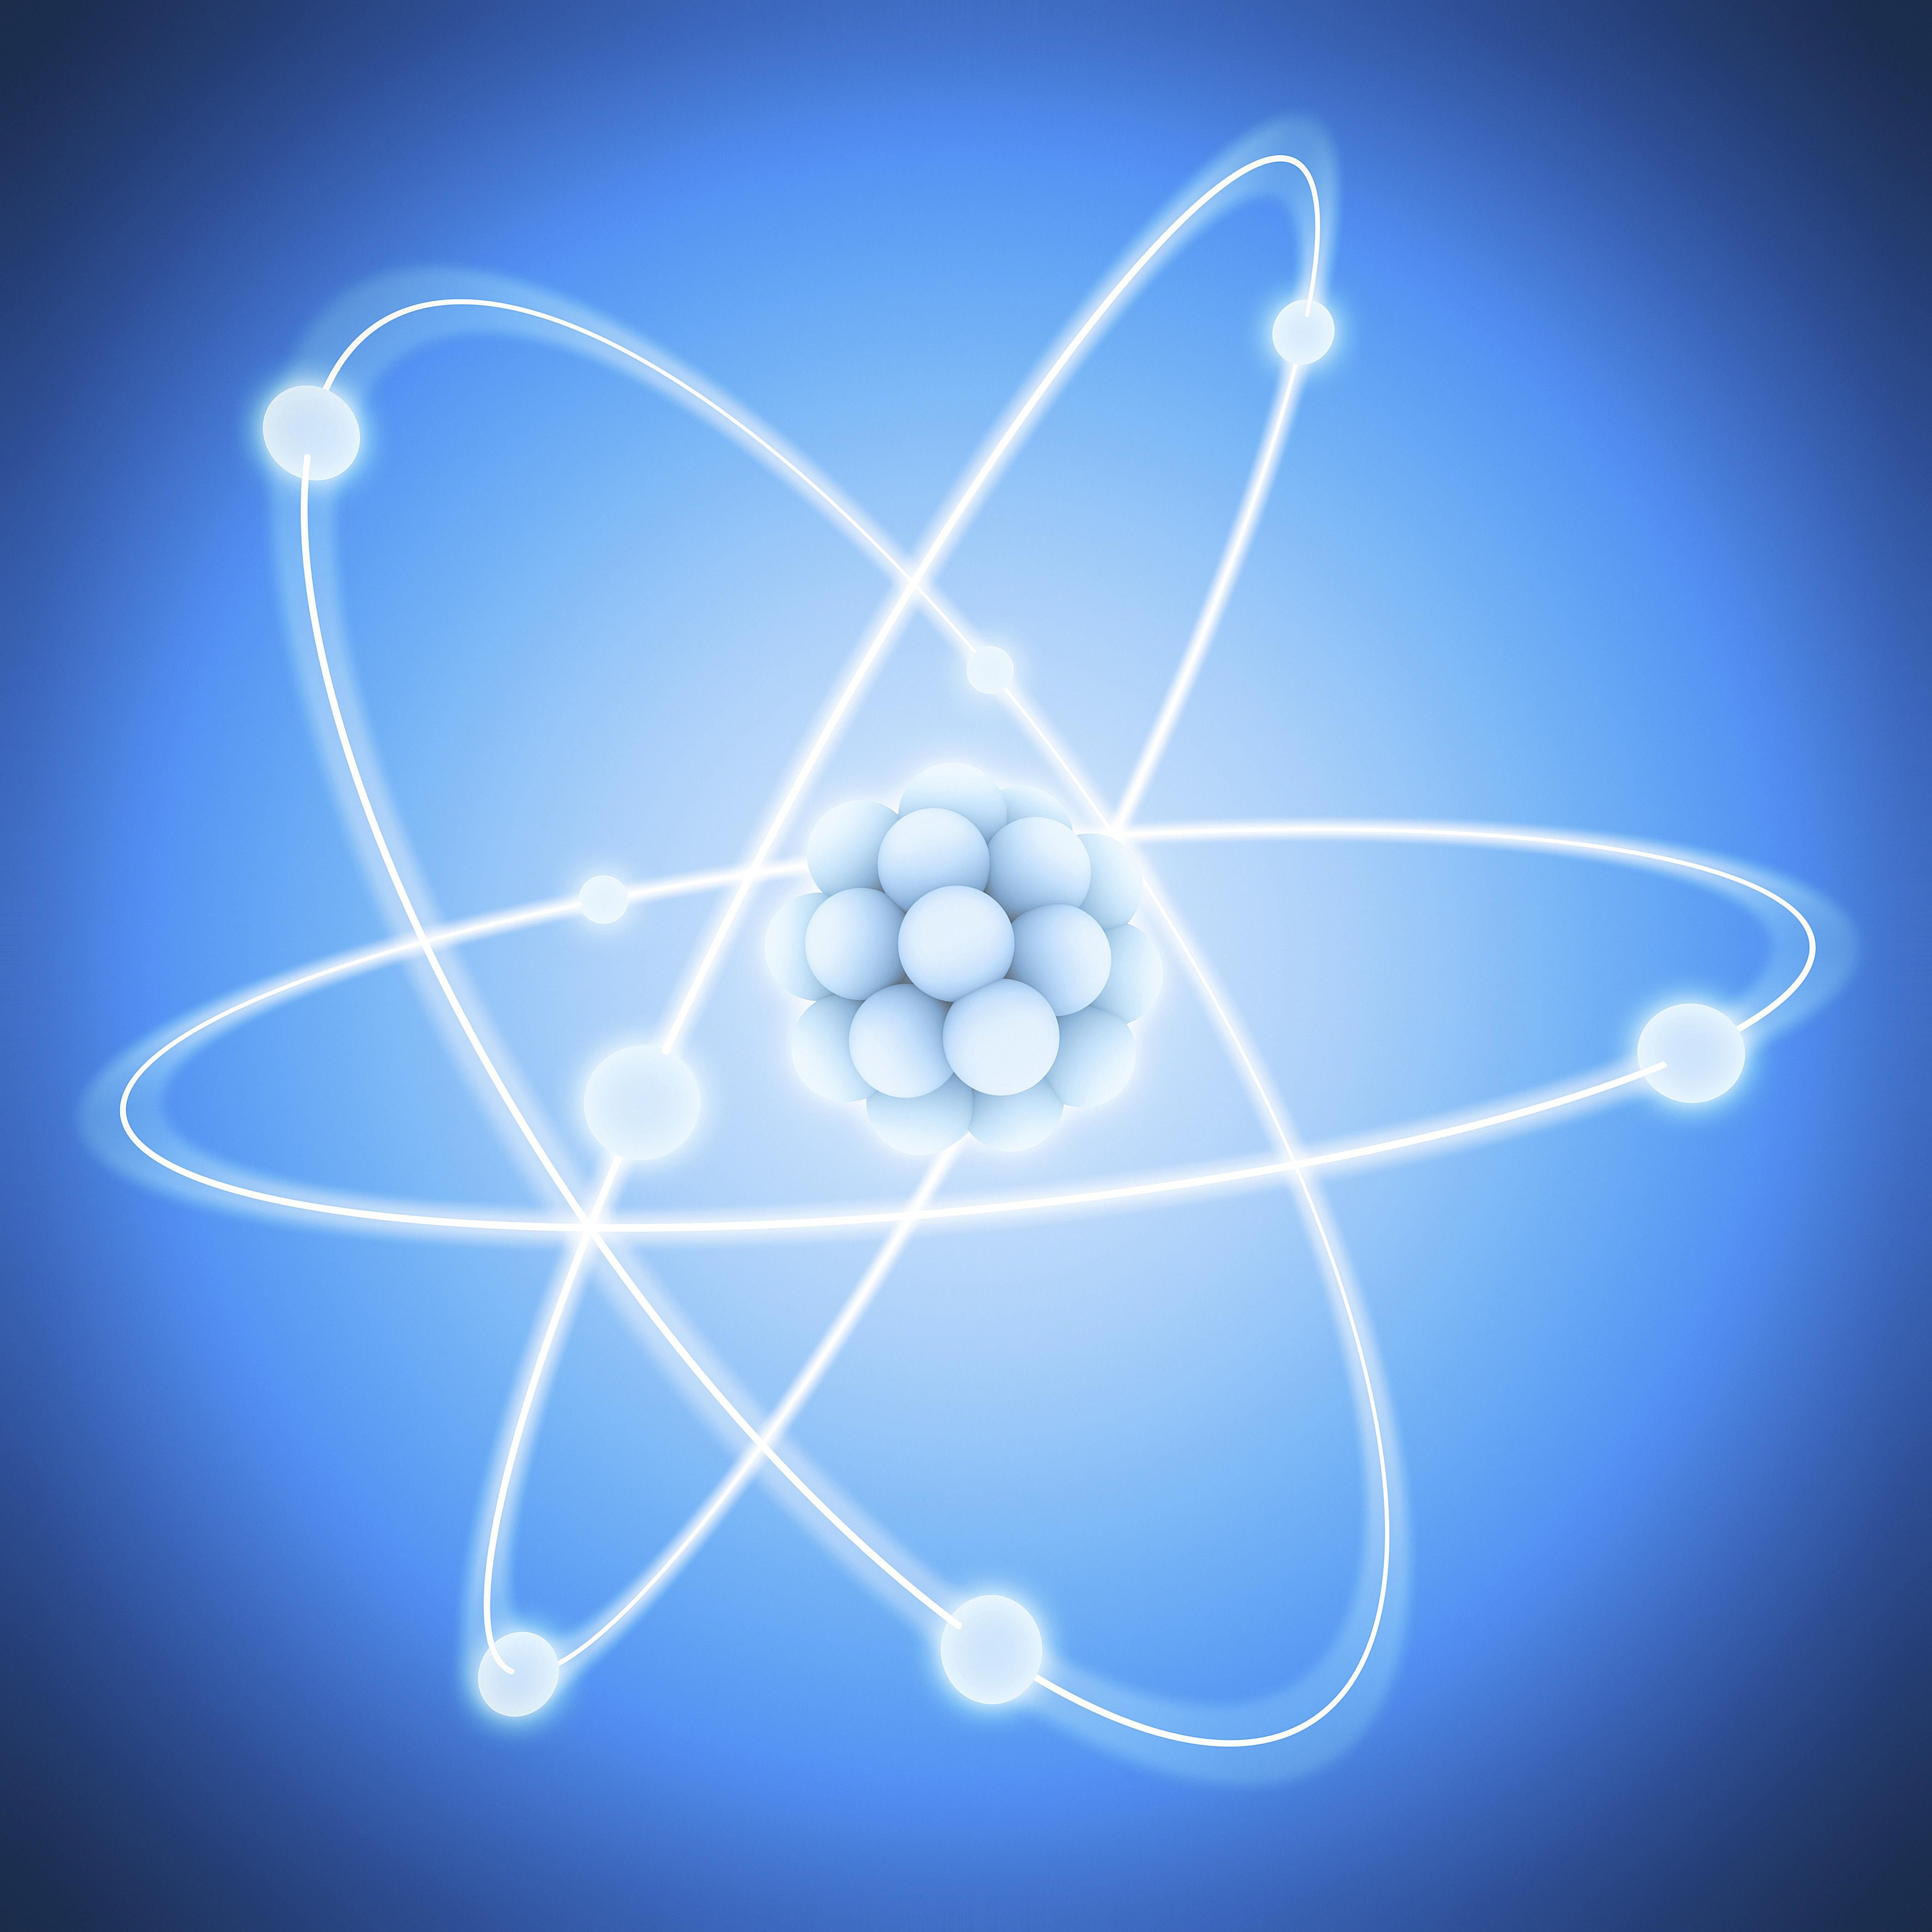 Атом 1.5. Атомная Энергетика. Энергия атома. Атом в атомной энергетике. Ядерная энергия.